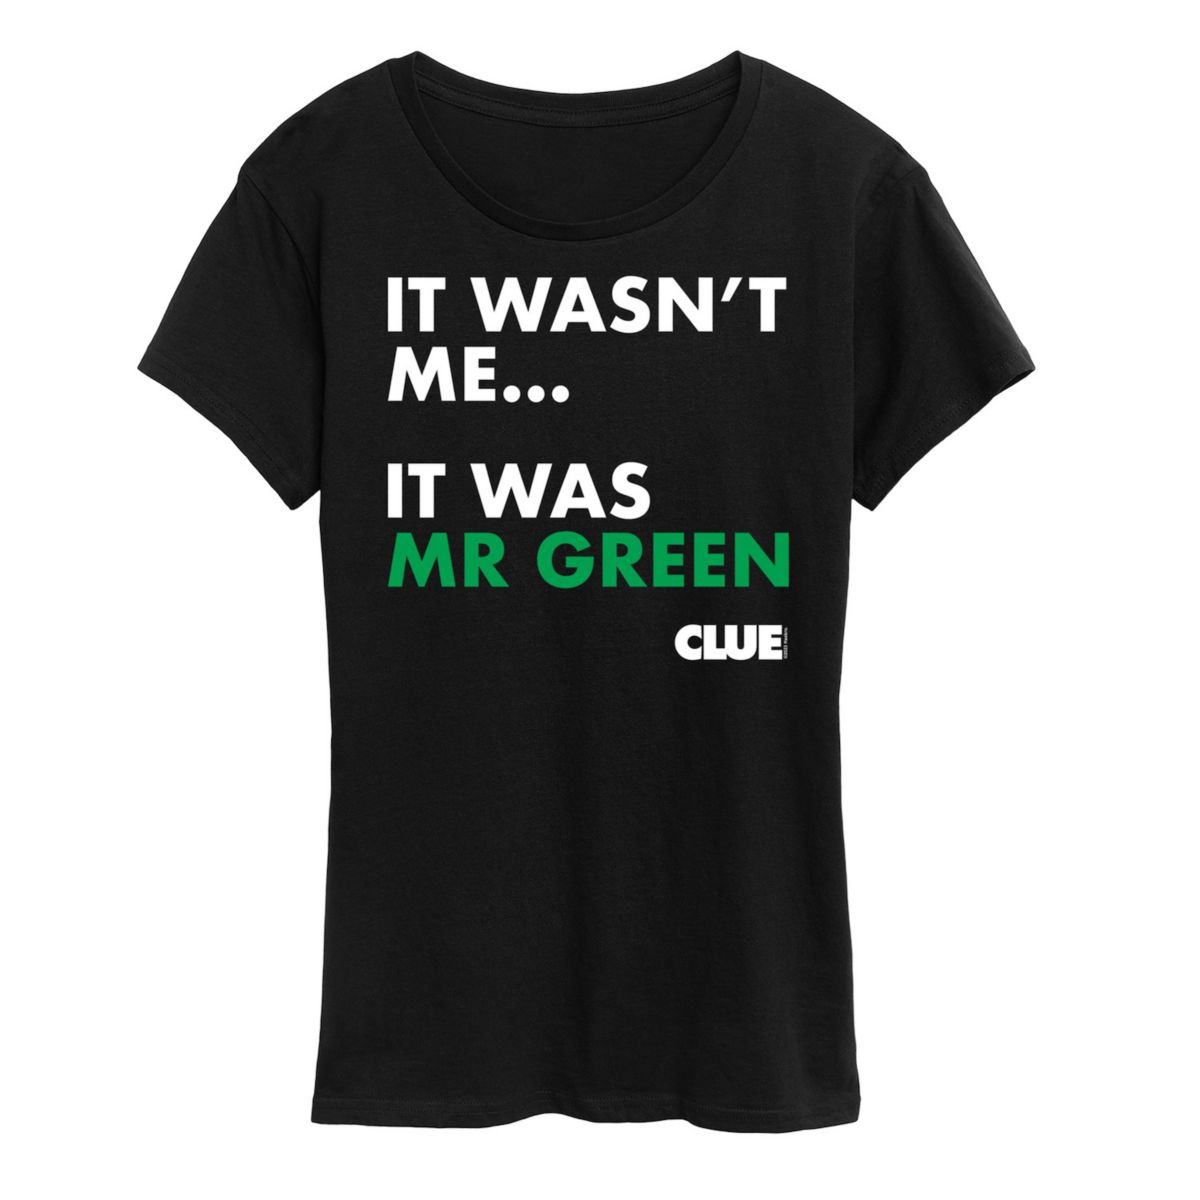 Женская футболка Clue It Was Mr. Green с графическим рисунком HASBRO